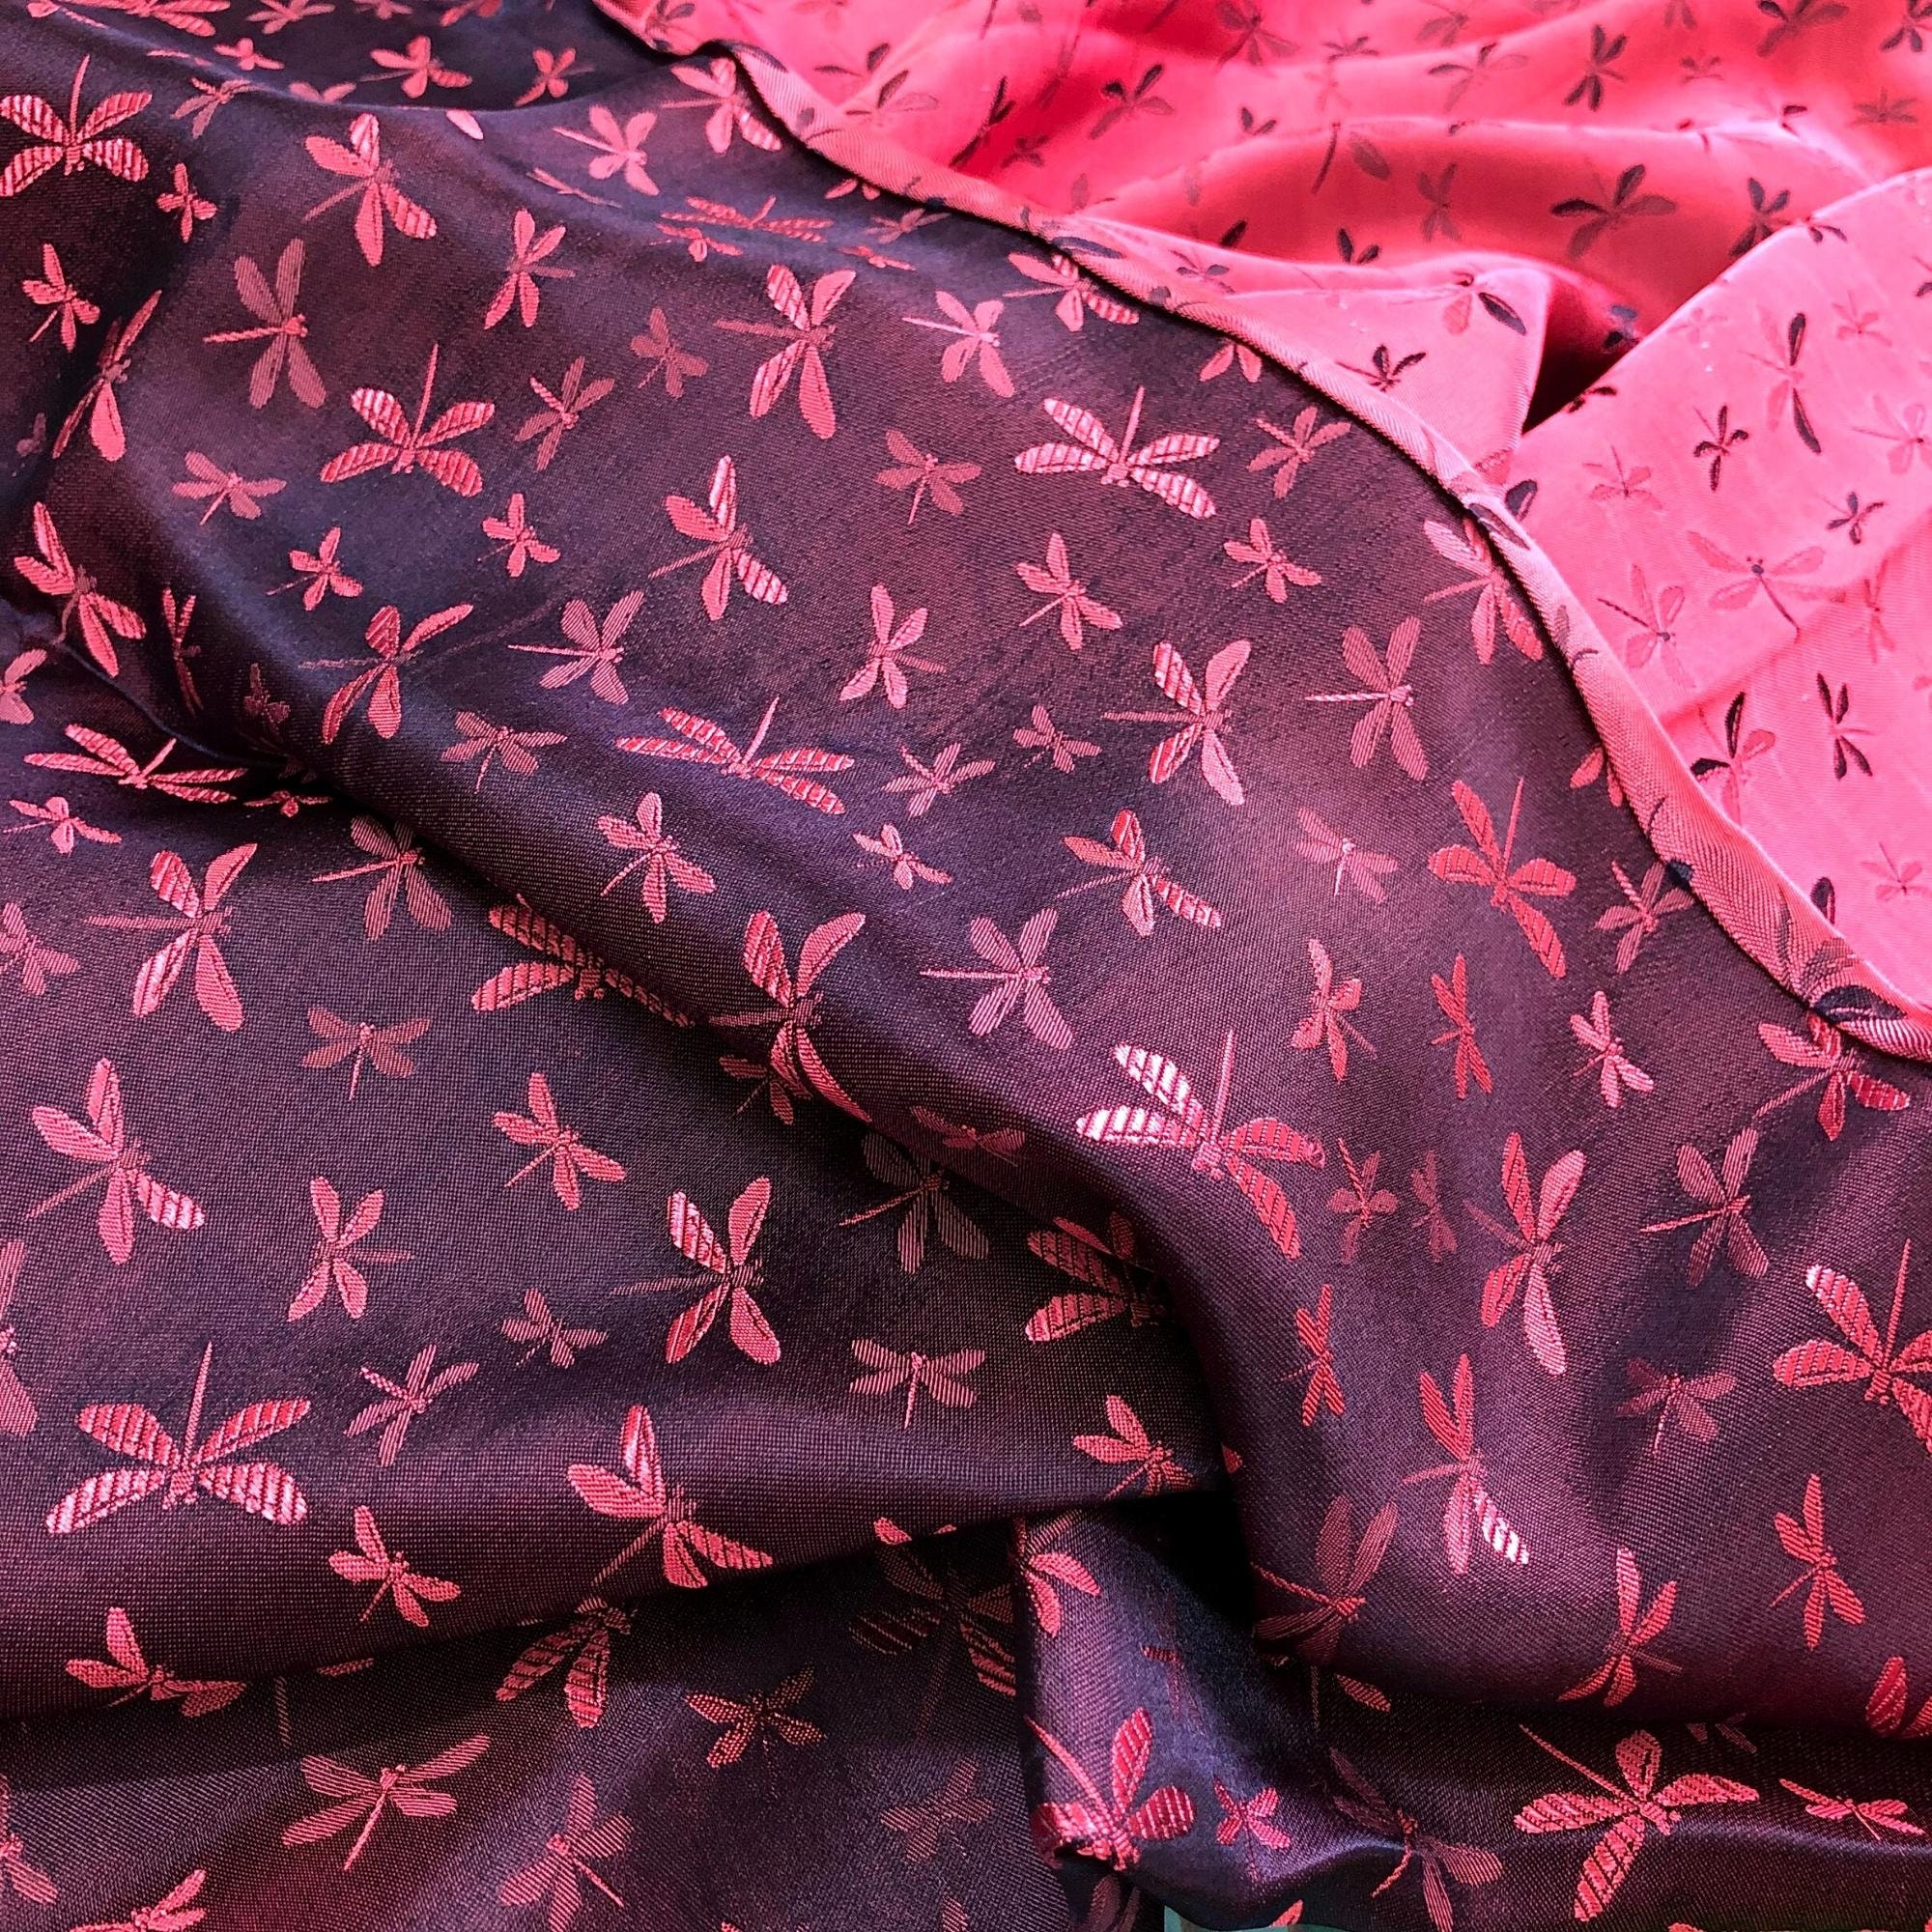 Vải Lụa Tơ Tằm văn chuồn chuồn màu tím hồng, mềm#mượt#mịn, dệt thủ công, khổ vải 90cm